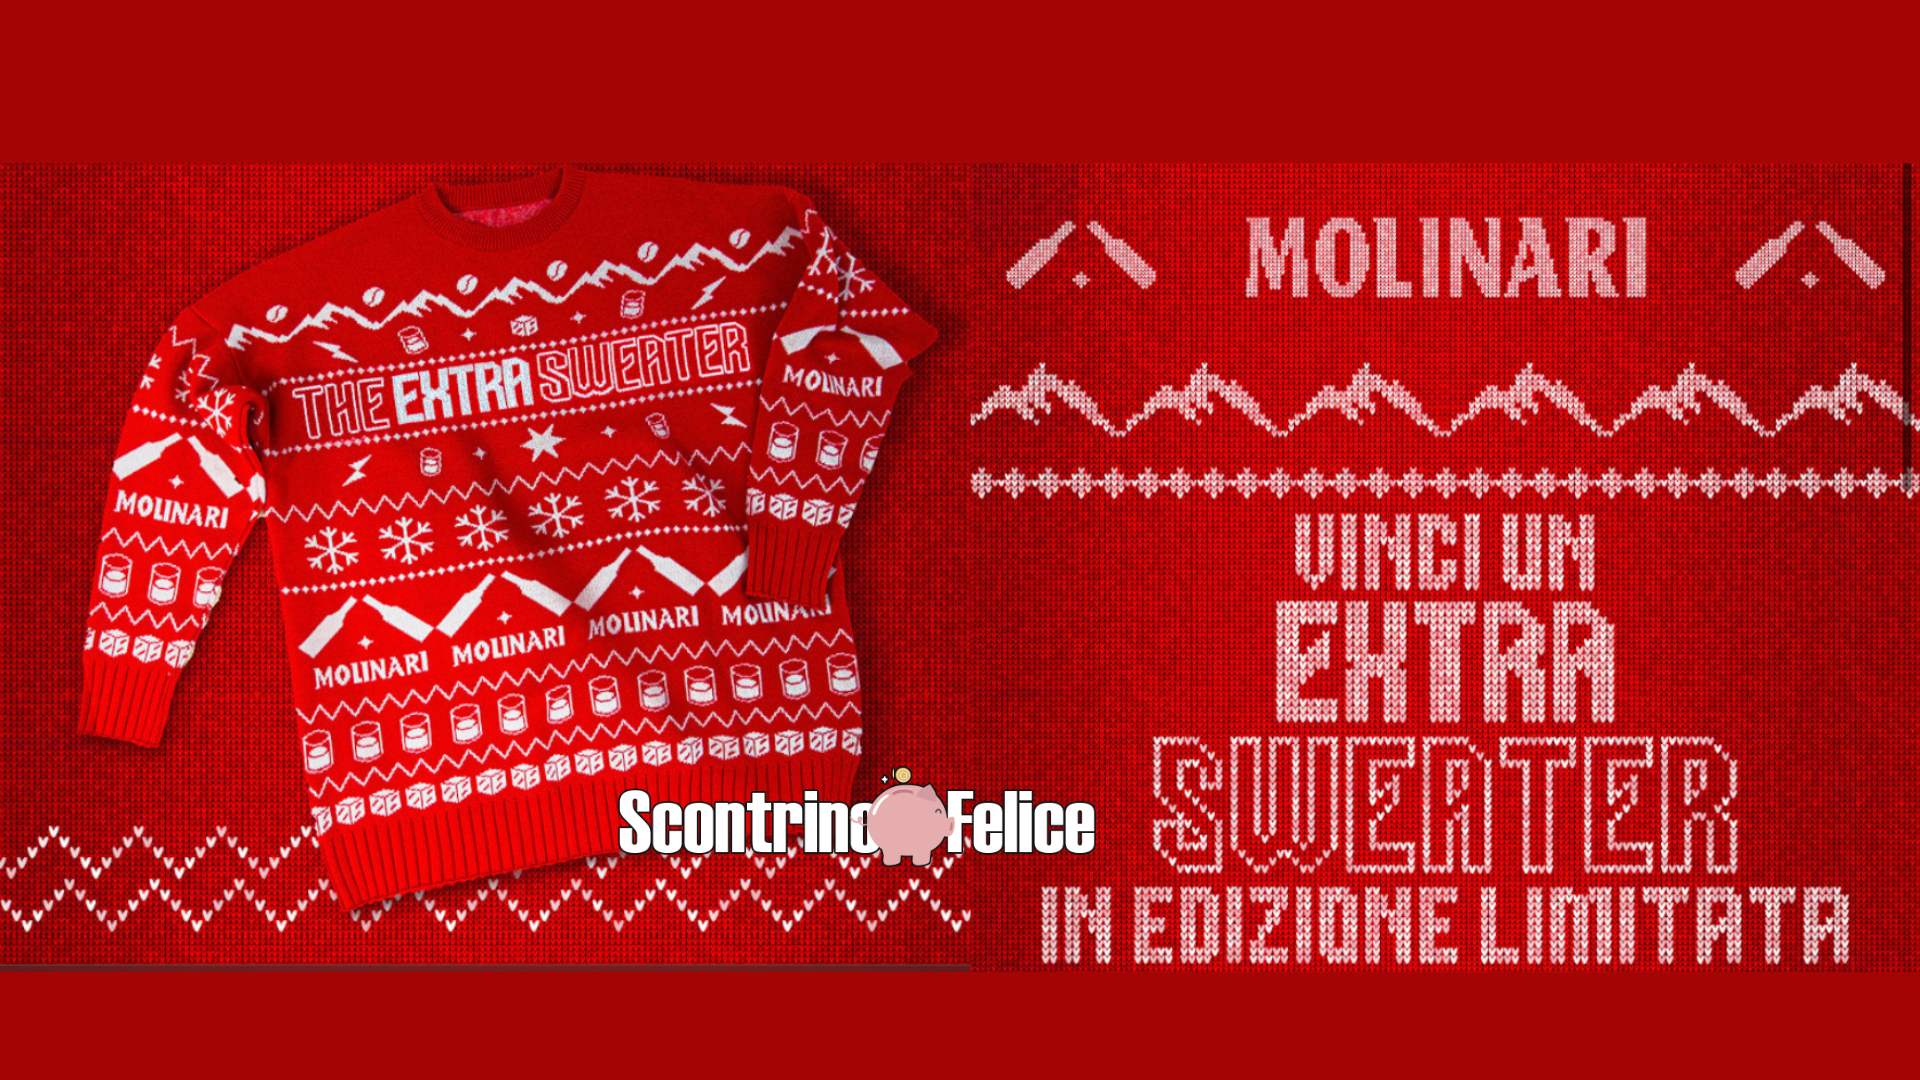 Vinci GRATIS un esclusivo maglione natalizio Molinari in edizione limitata 1